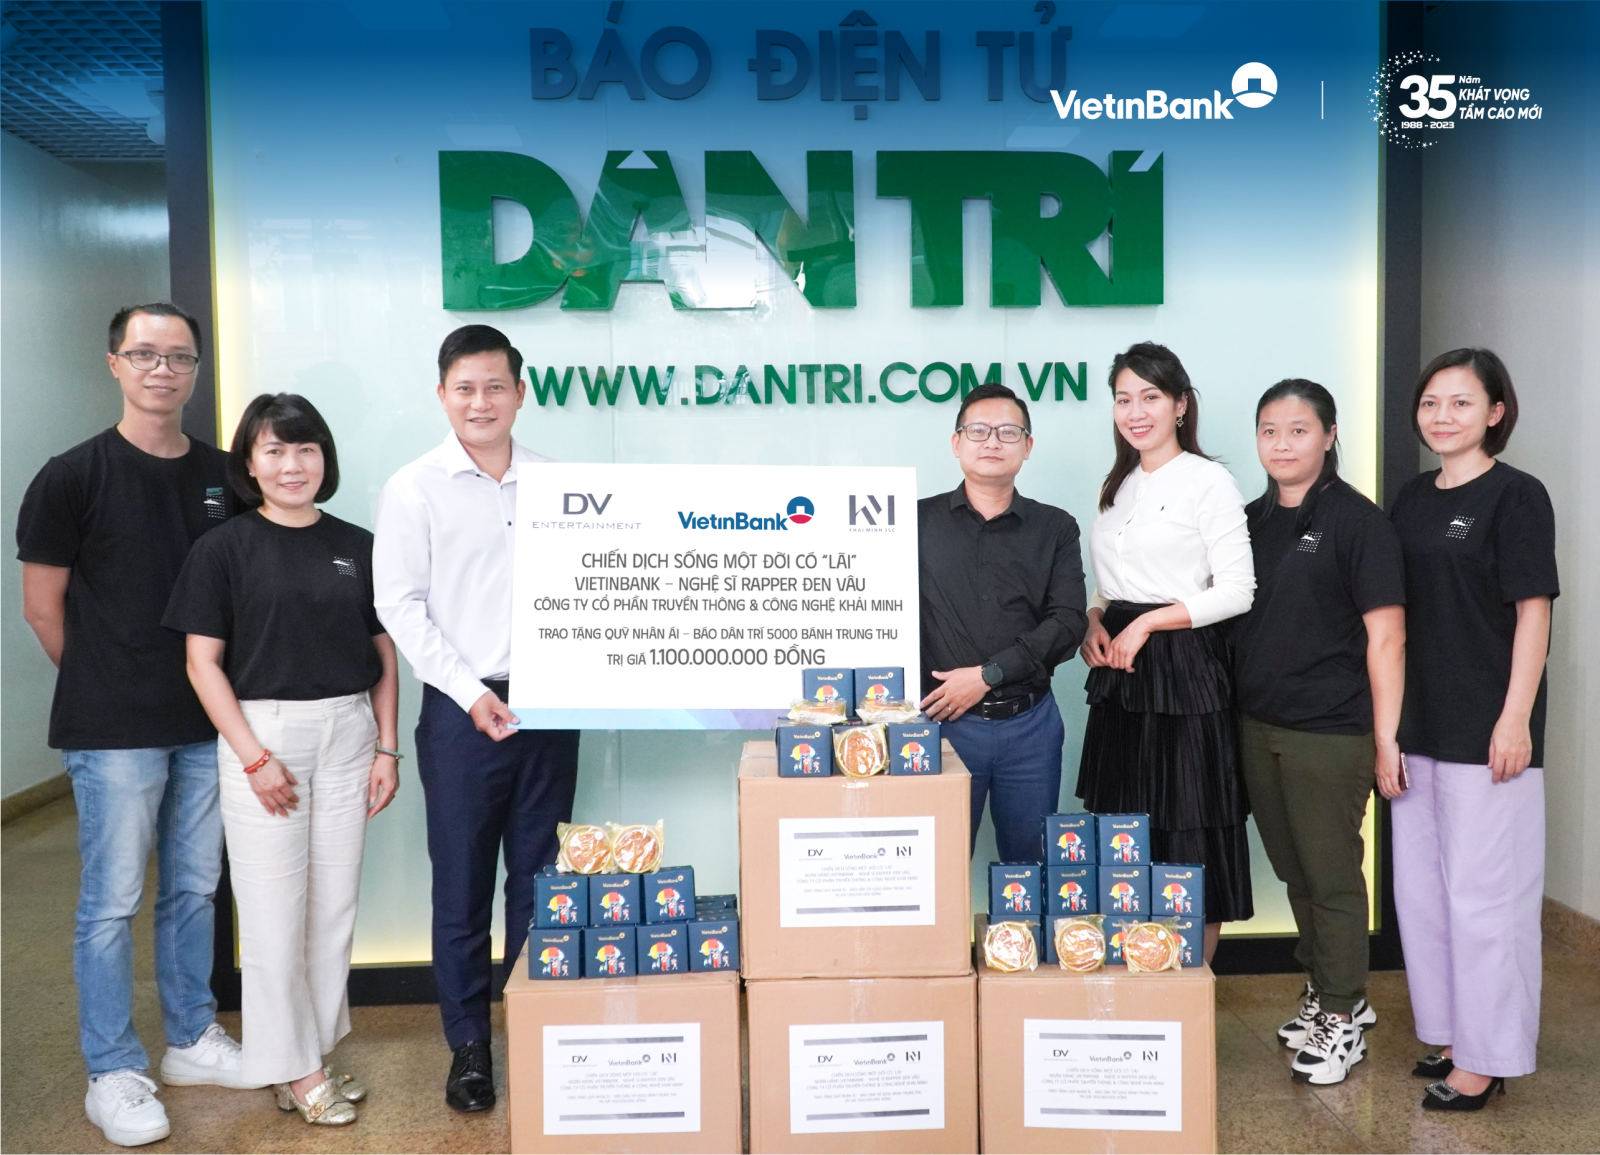 Đại diện VietinBank, Công ty cổ phần Truyền thông và Công nghệ Khải Minh thông qua báo Dân trí tặng bánh trung thu tới trẻ em có hoàn cảnh khó khăn 